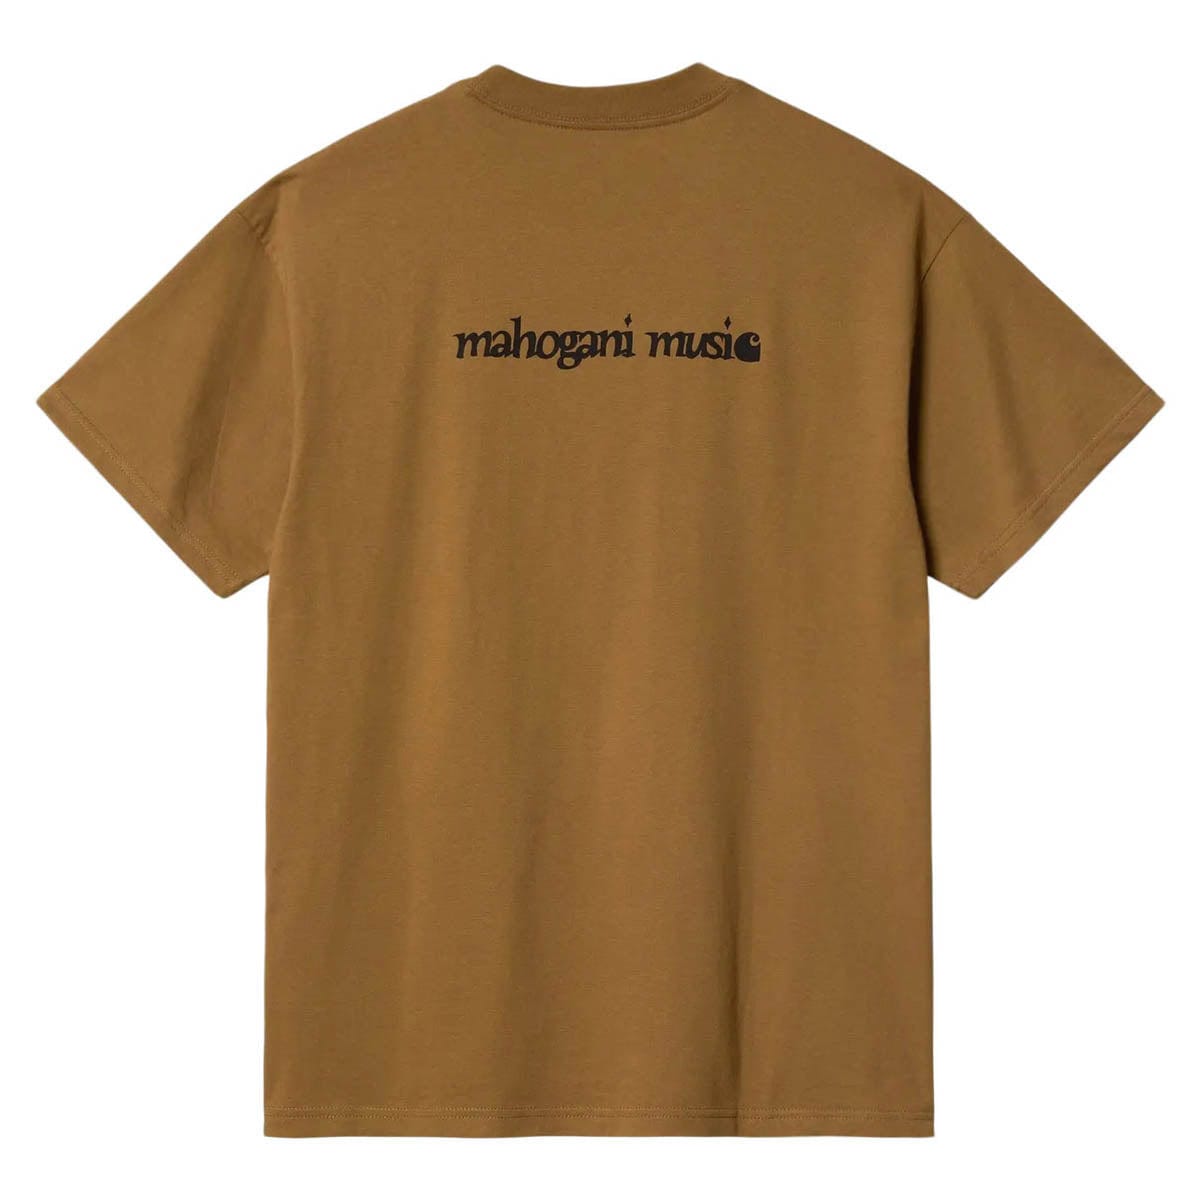 Carhartt WIP T-Shirts S/S MAHOGANI MUSIC T-SHIRT